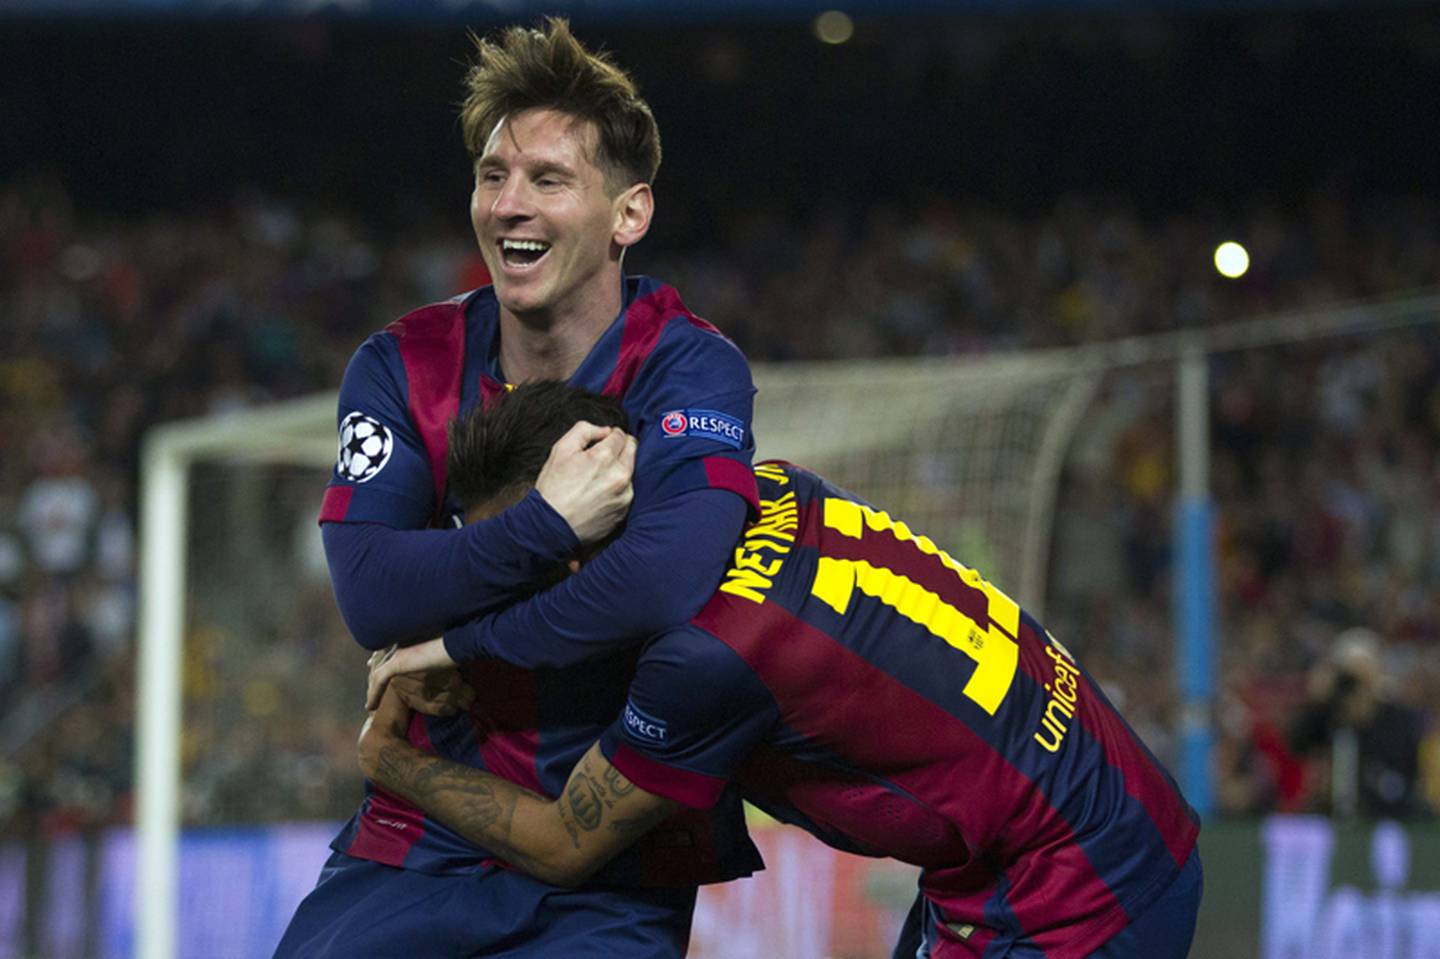 Cristiano Ronaldo y Leo Messi protagonizan histórica jugada de